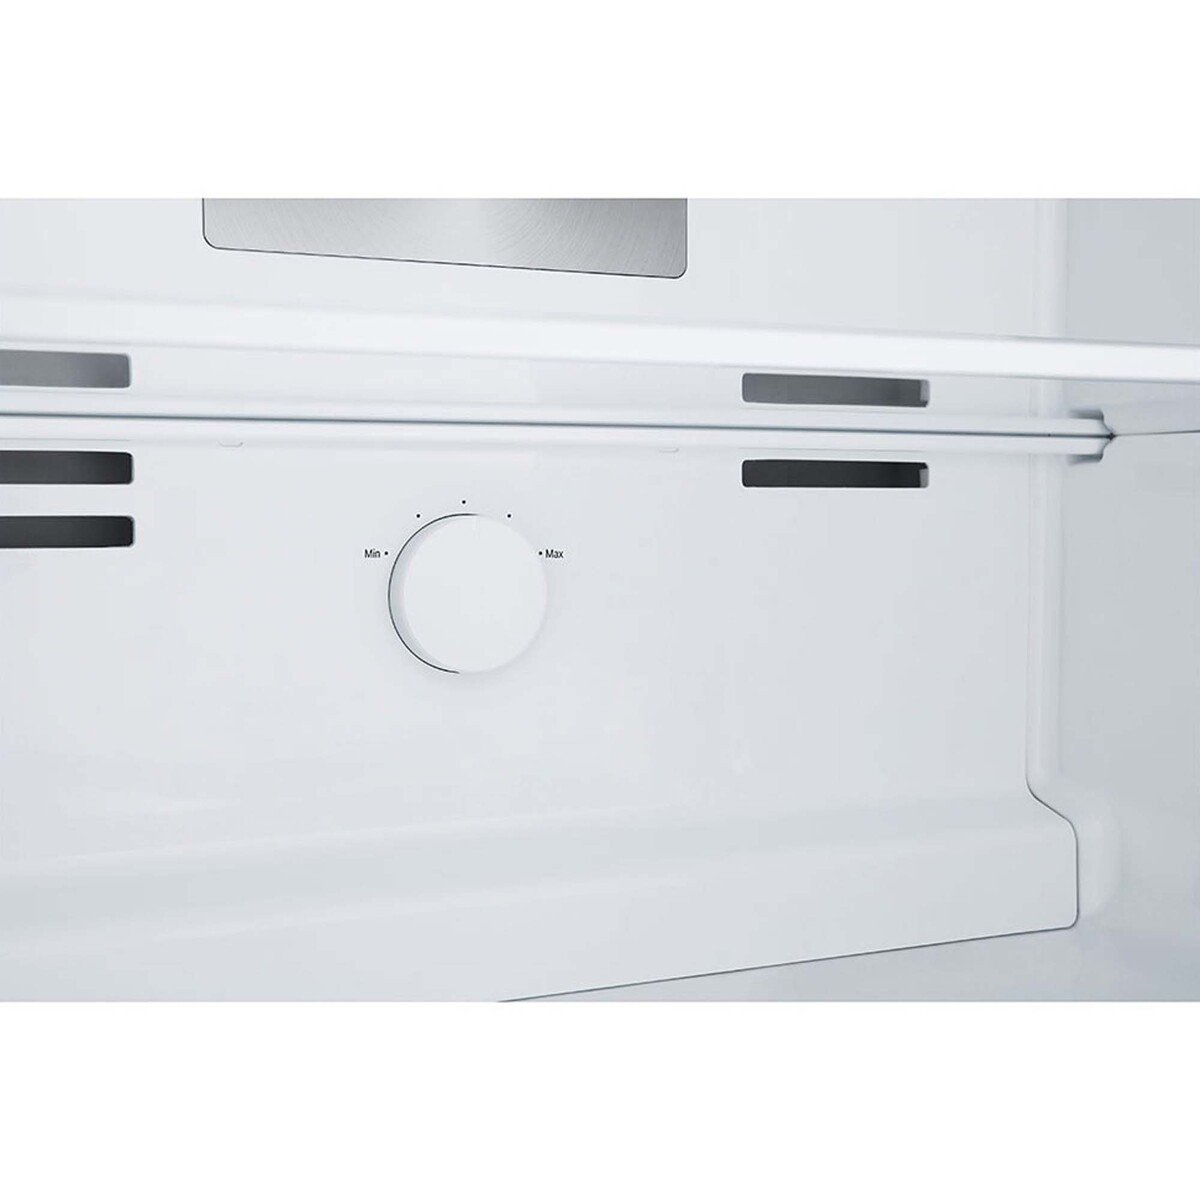 LG Double Door Refrigerator 395LTR, Door Cooling+, Multi Air Flow, Dark Graphite, GN-B512PQGB